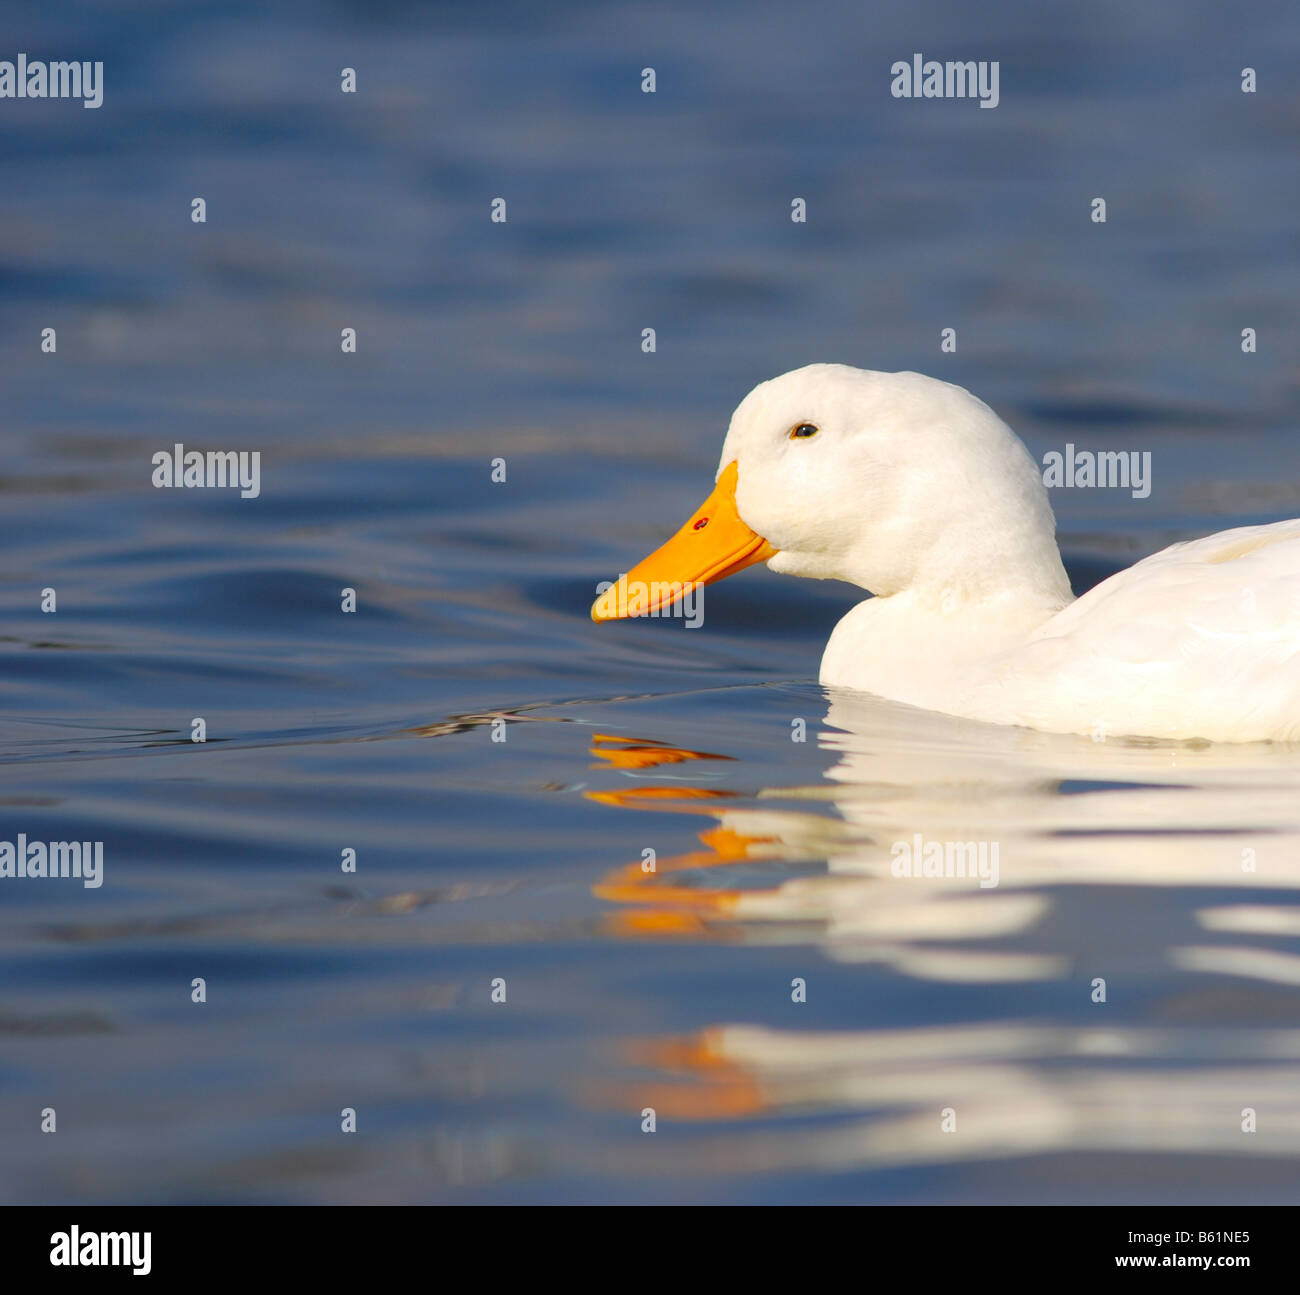 Beau canard blanc sur une eau bleu clair Banque D'Images